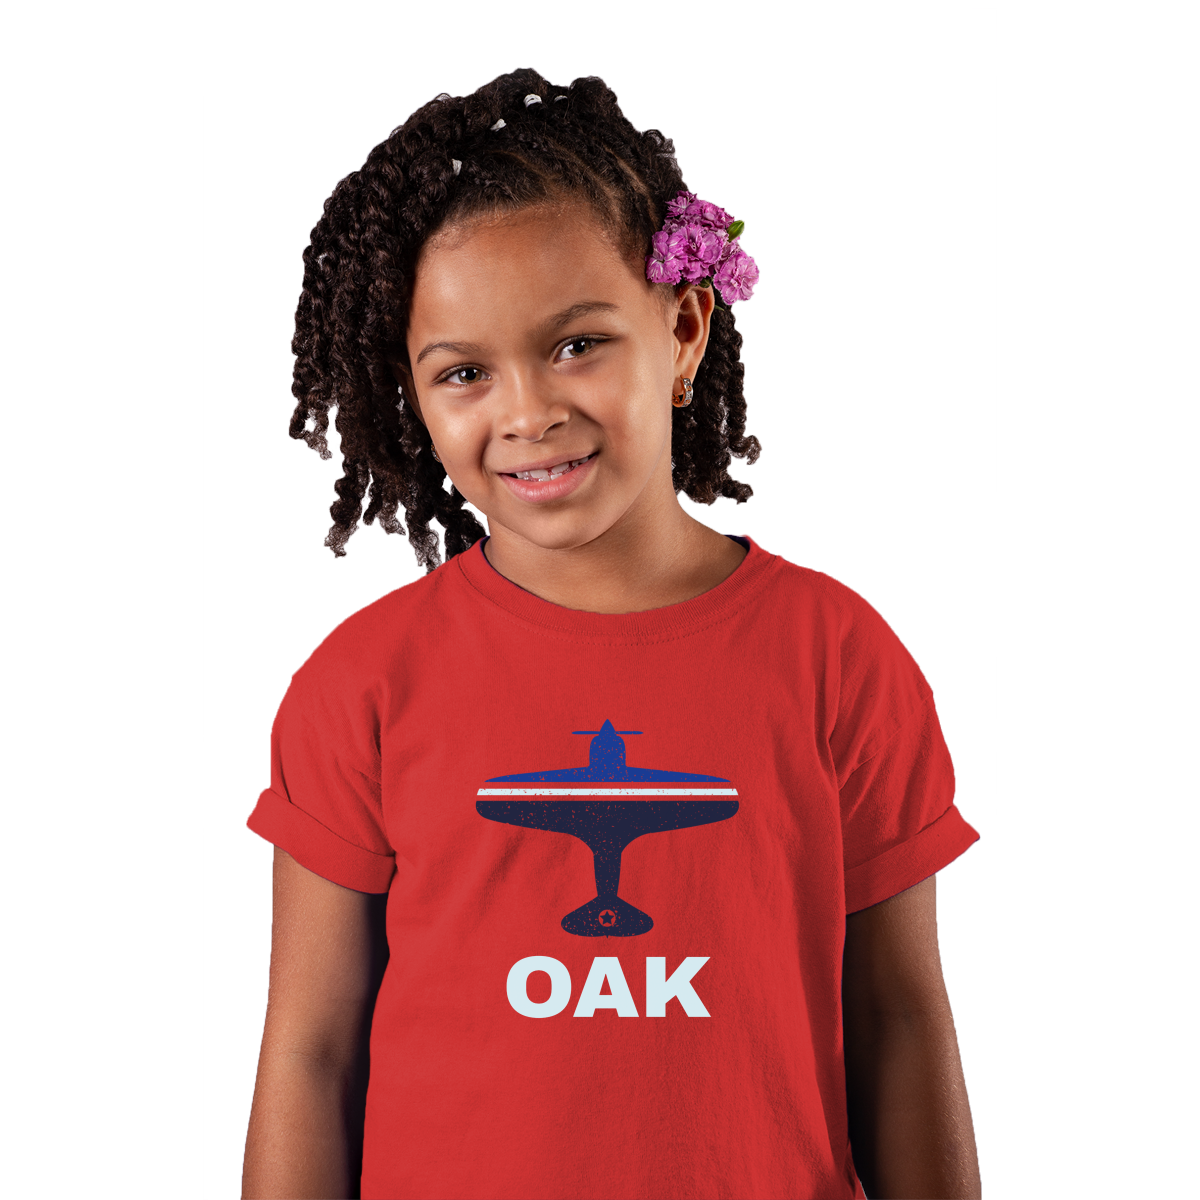 Fly Oakland OAK Airport Kids T-shirt | Red